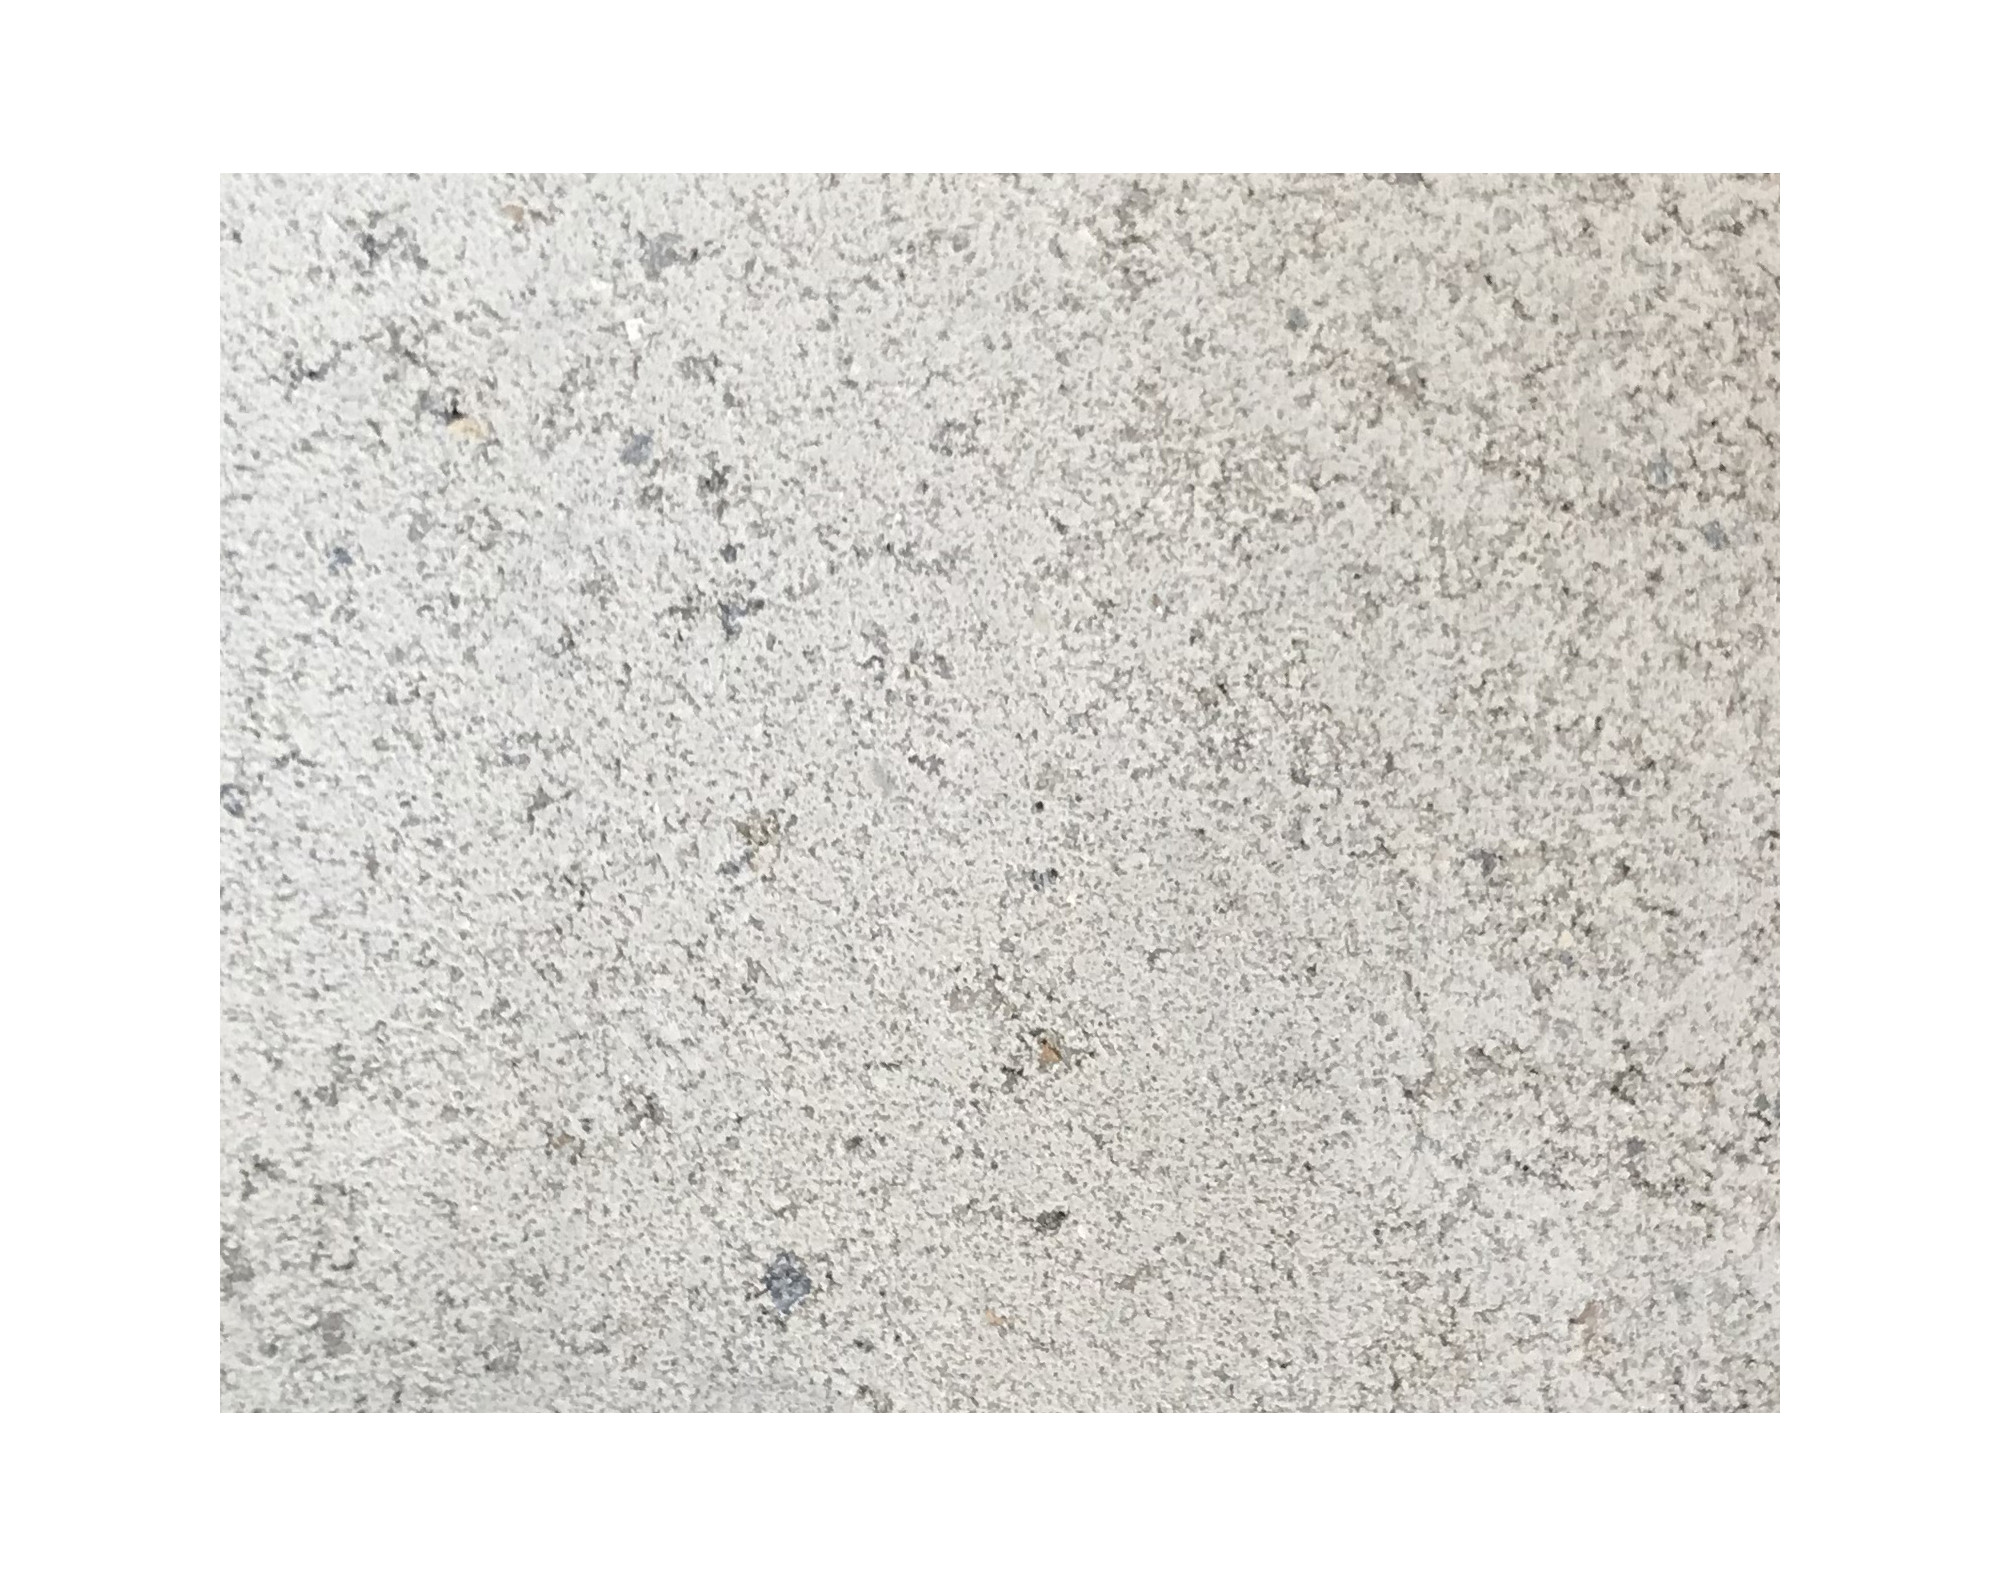 Harmo roc nevadaset, rustica-serie, 8-vormig d:4,20mx6,60m, gebroken wit, beton